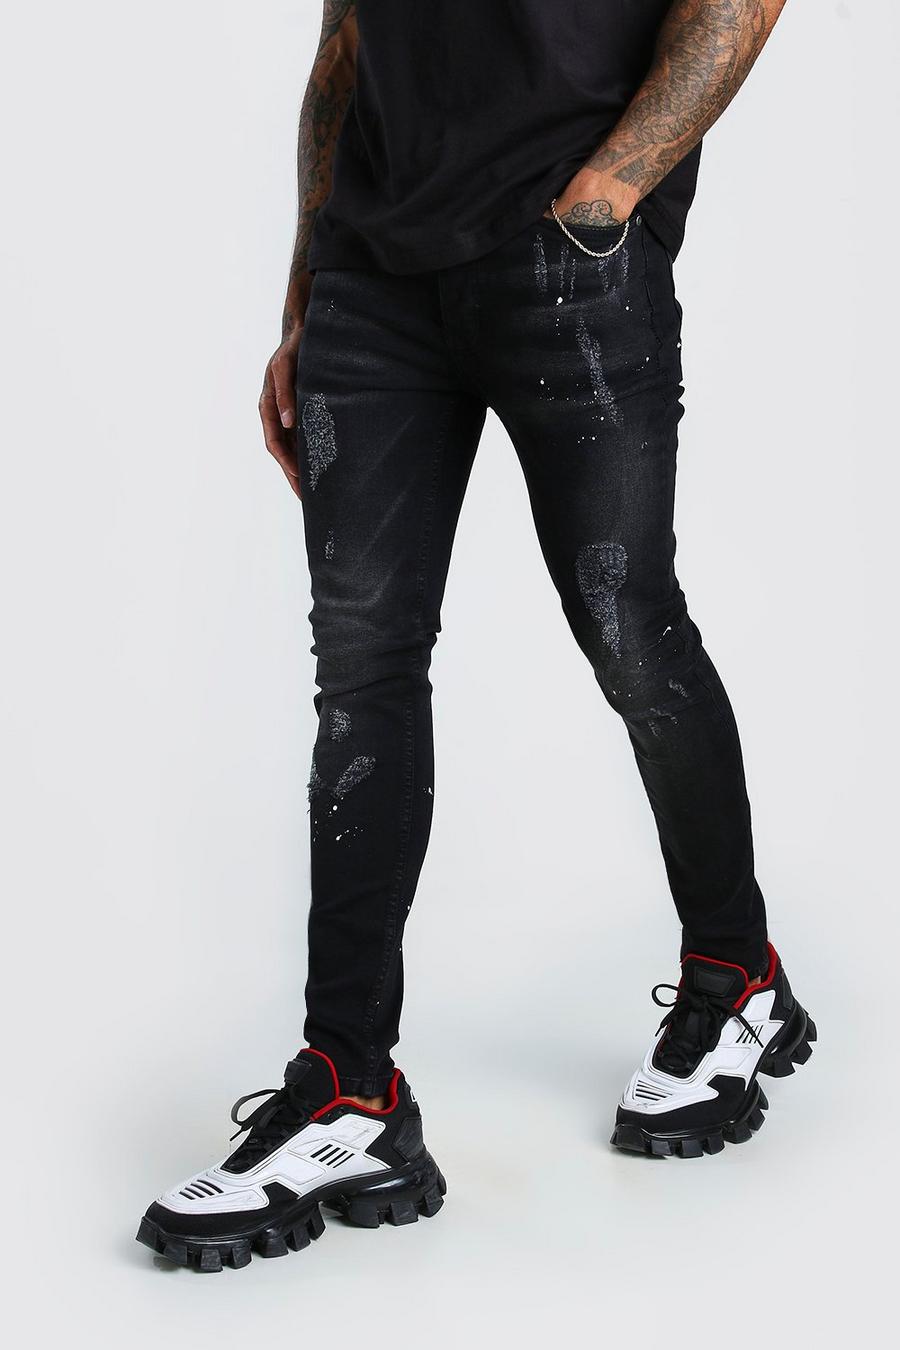 שחור דהוי סופר סקיני ג'ינס עם קרעים וכתמי צבע 